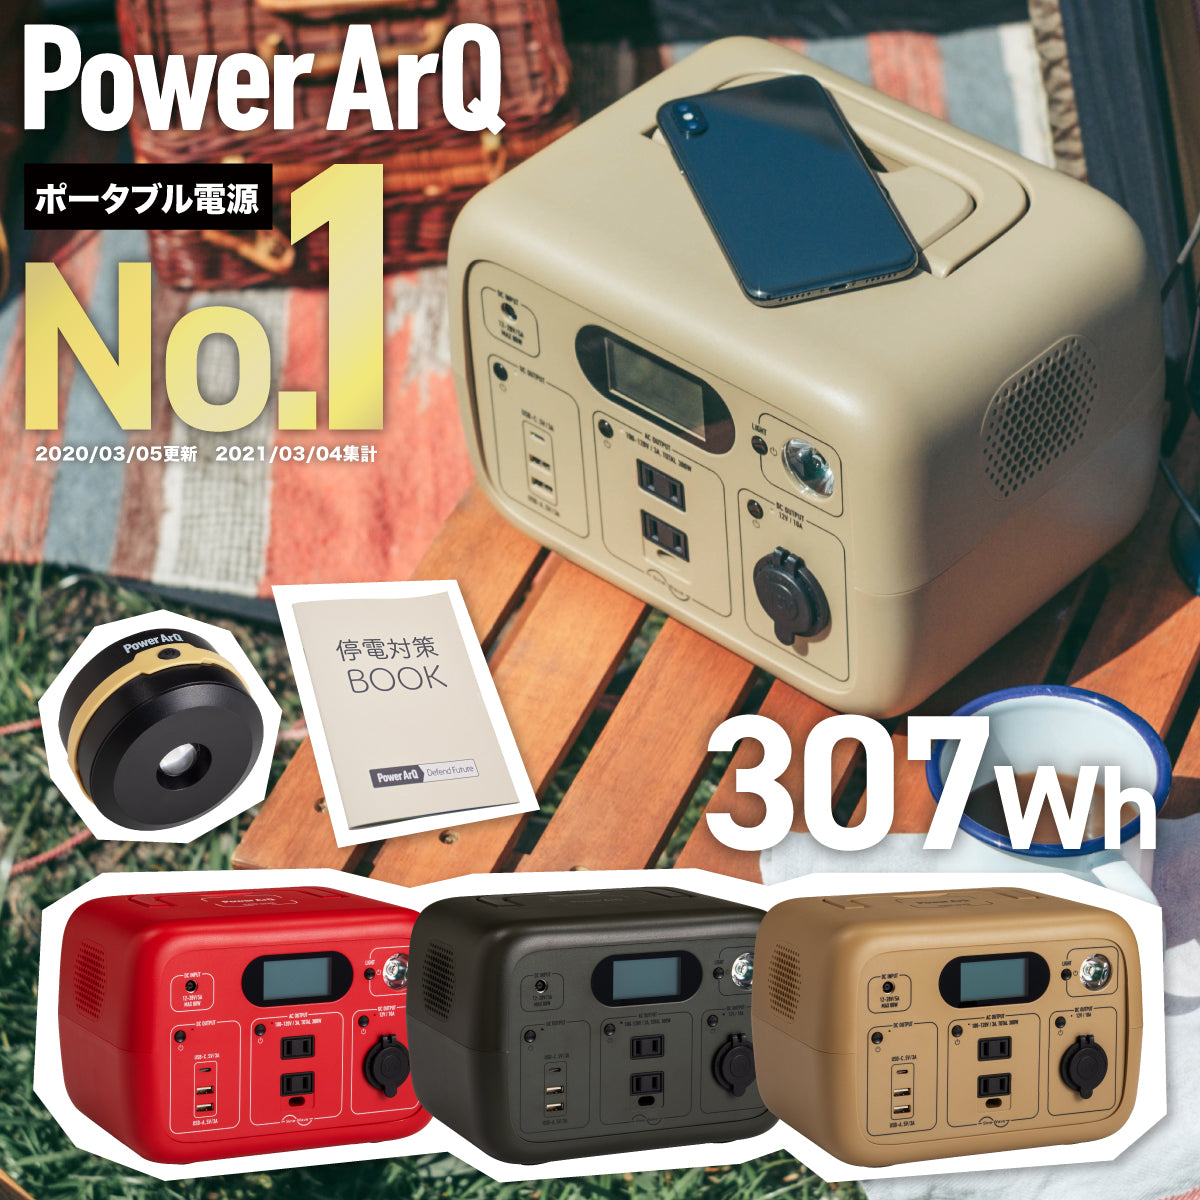 ポータブル電源 PowerArQ mini 2 300Wh Smart Tap / 冒険に ...